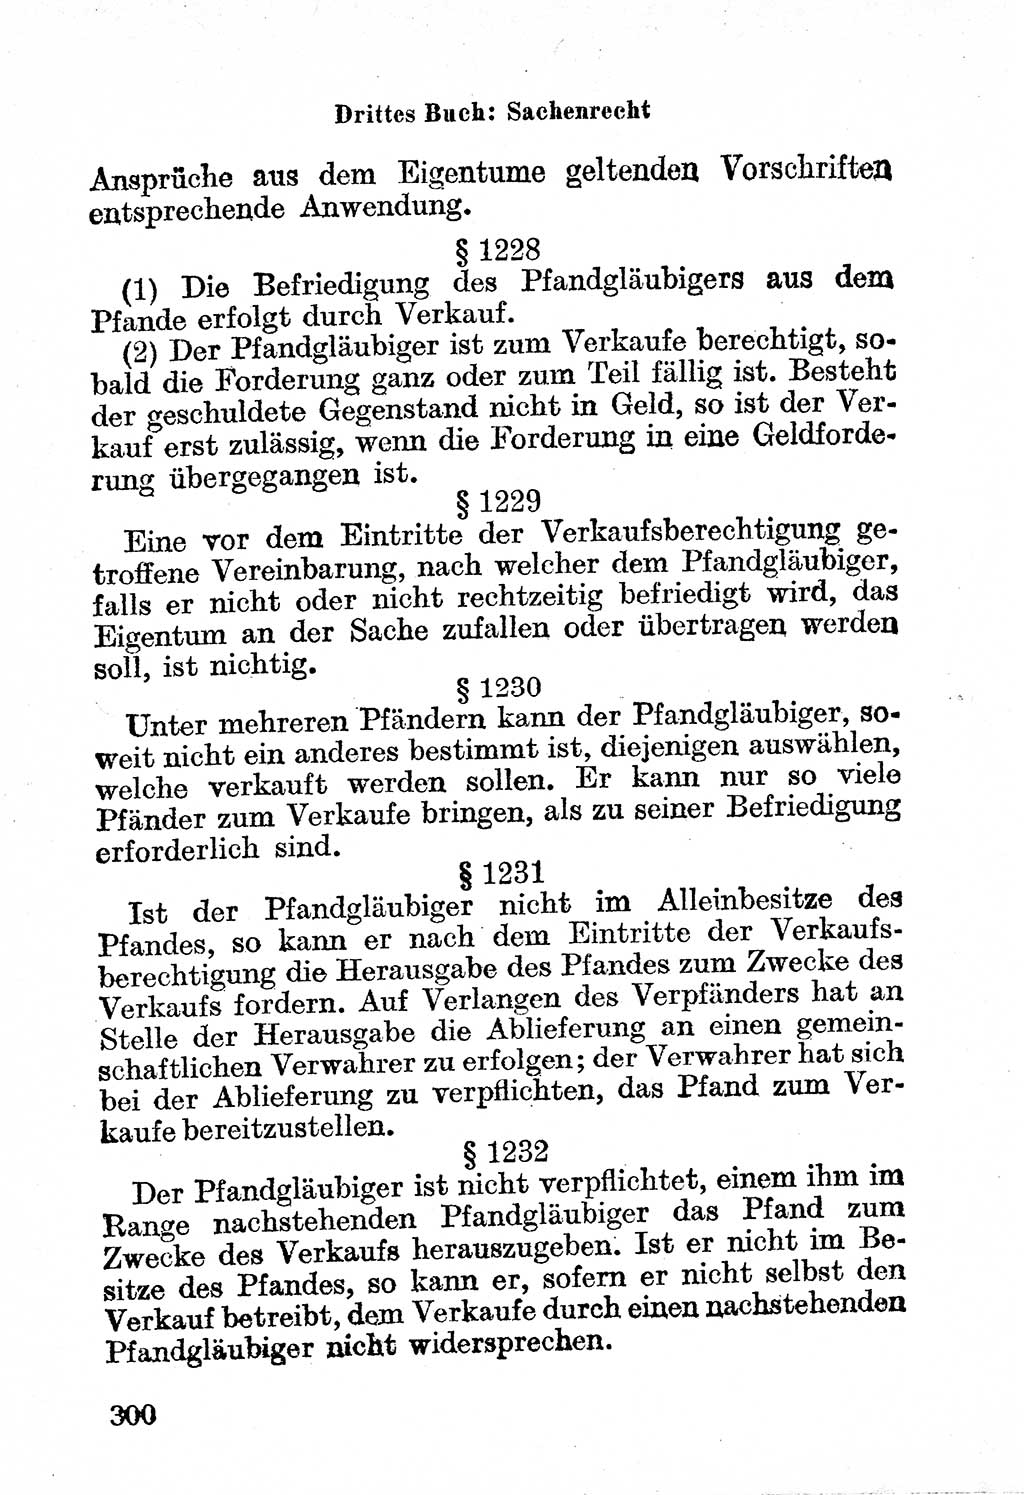 Bürgerliches Gesetzbuch (BGB) nebst wichtigen Nebengesetzen [Deutsche Demokratische Republik (DDR)] 1956, Seite 300 (BGB Nebenges. DDR 1956, S. 300)